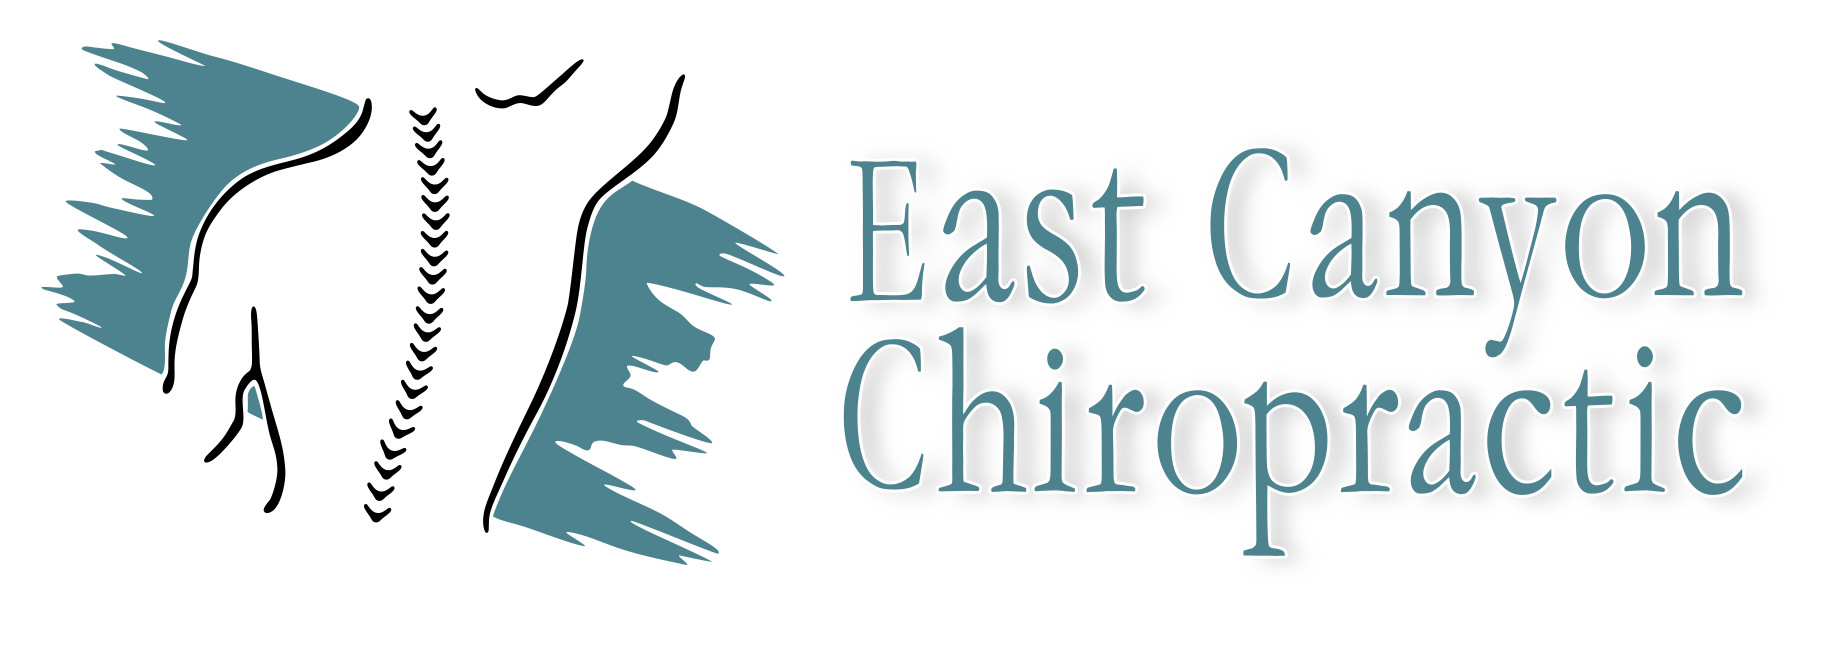 East Canyon Chiropractic